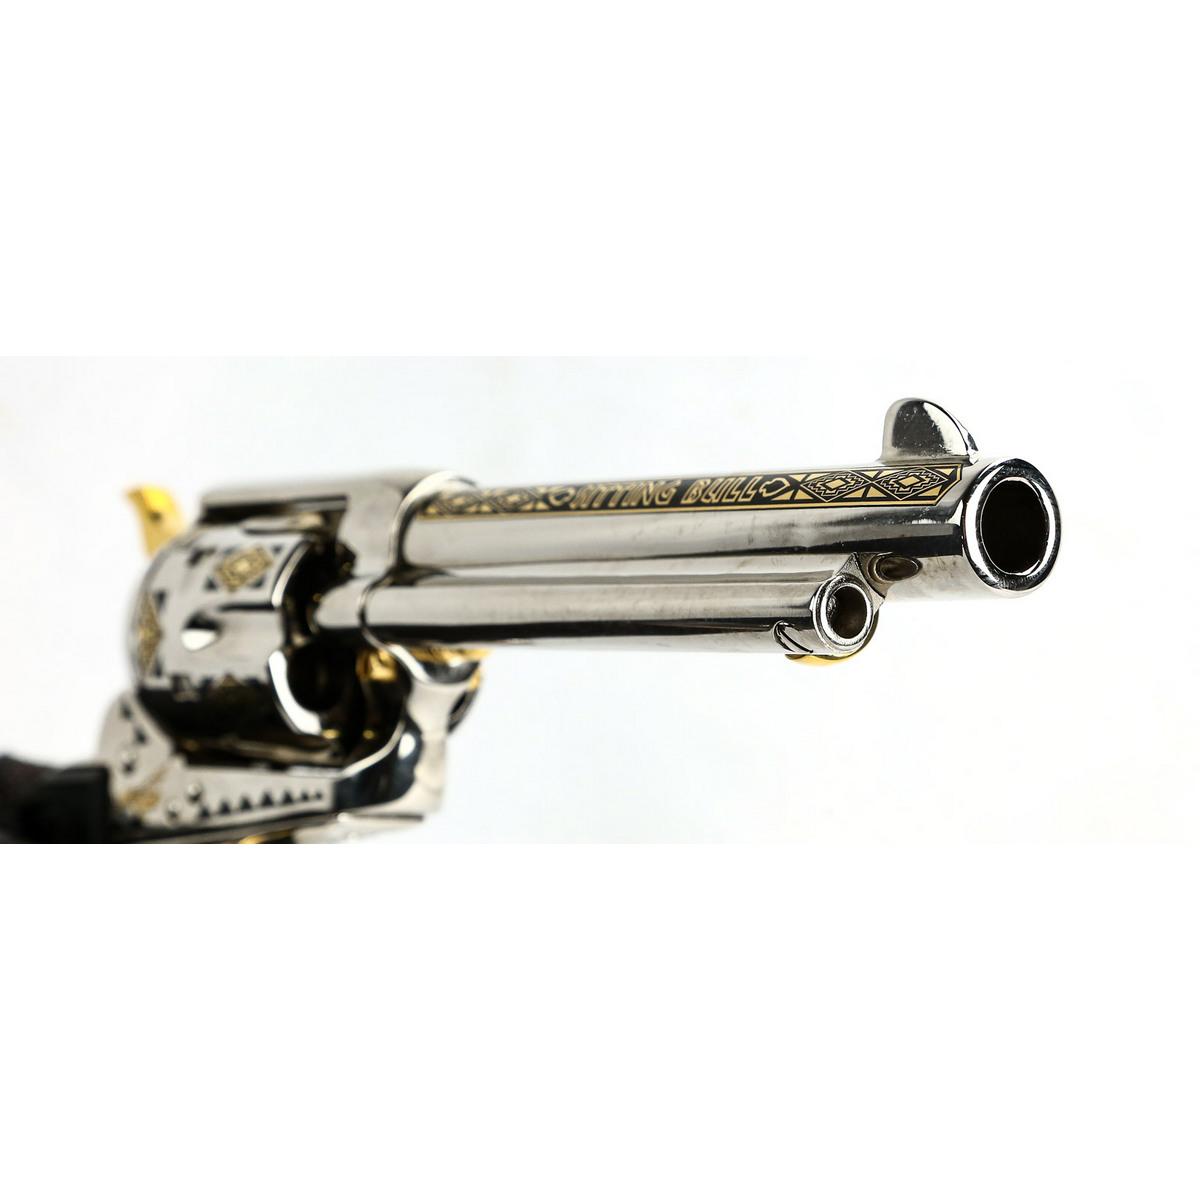 Colt SAA Sitting Bull Commem 45 Cal Revolver